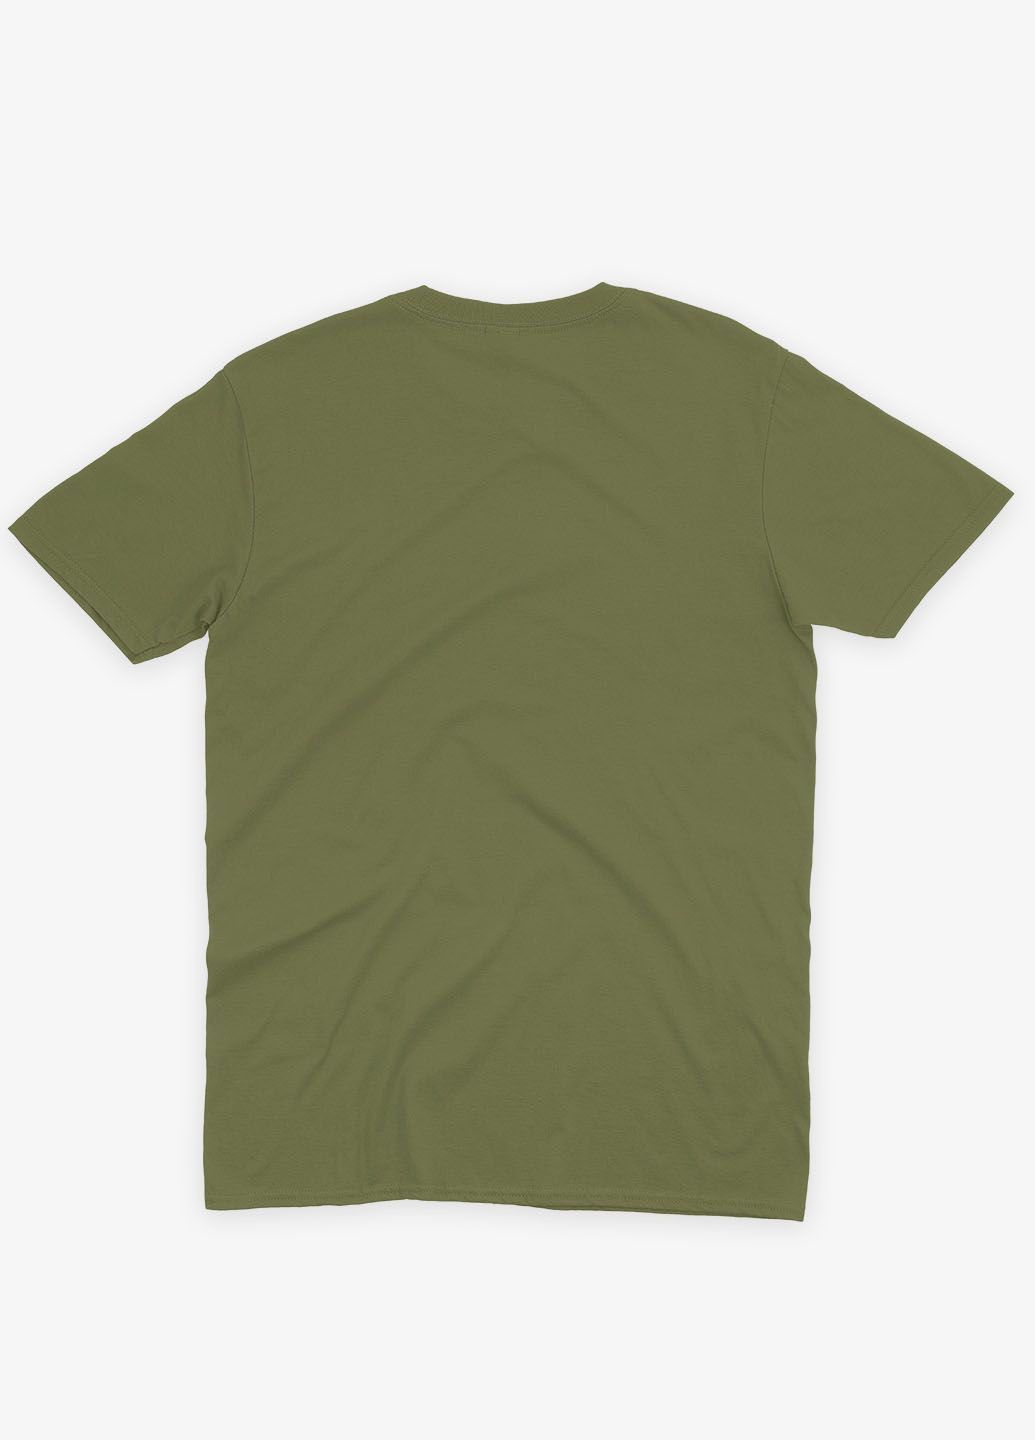 Хаки (оливковая) мужская футболка с принтом супергероя - человек-паук (ts001-1-hgr-006-014-049) Modno